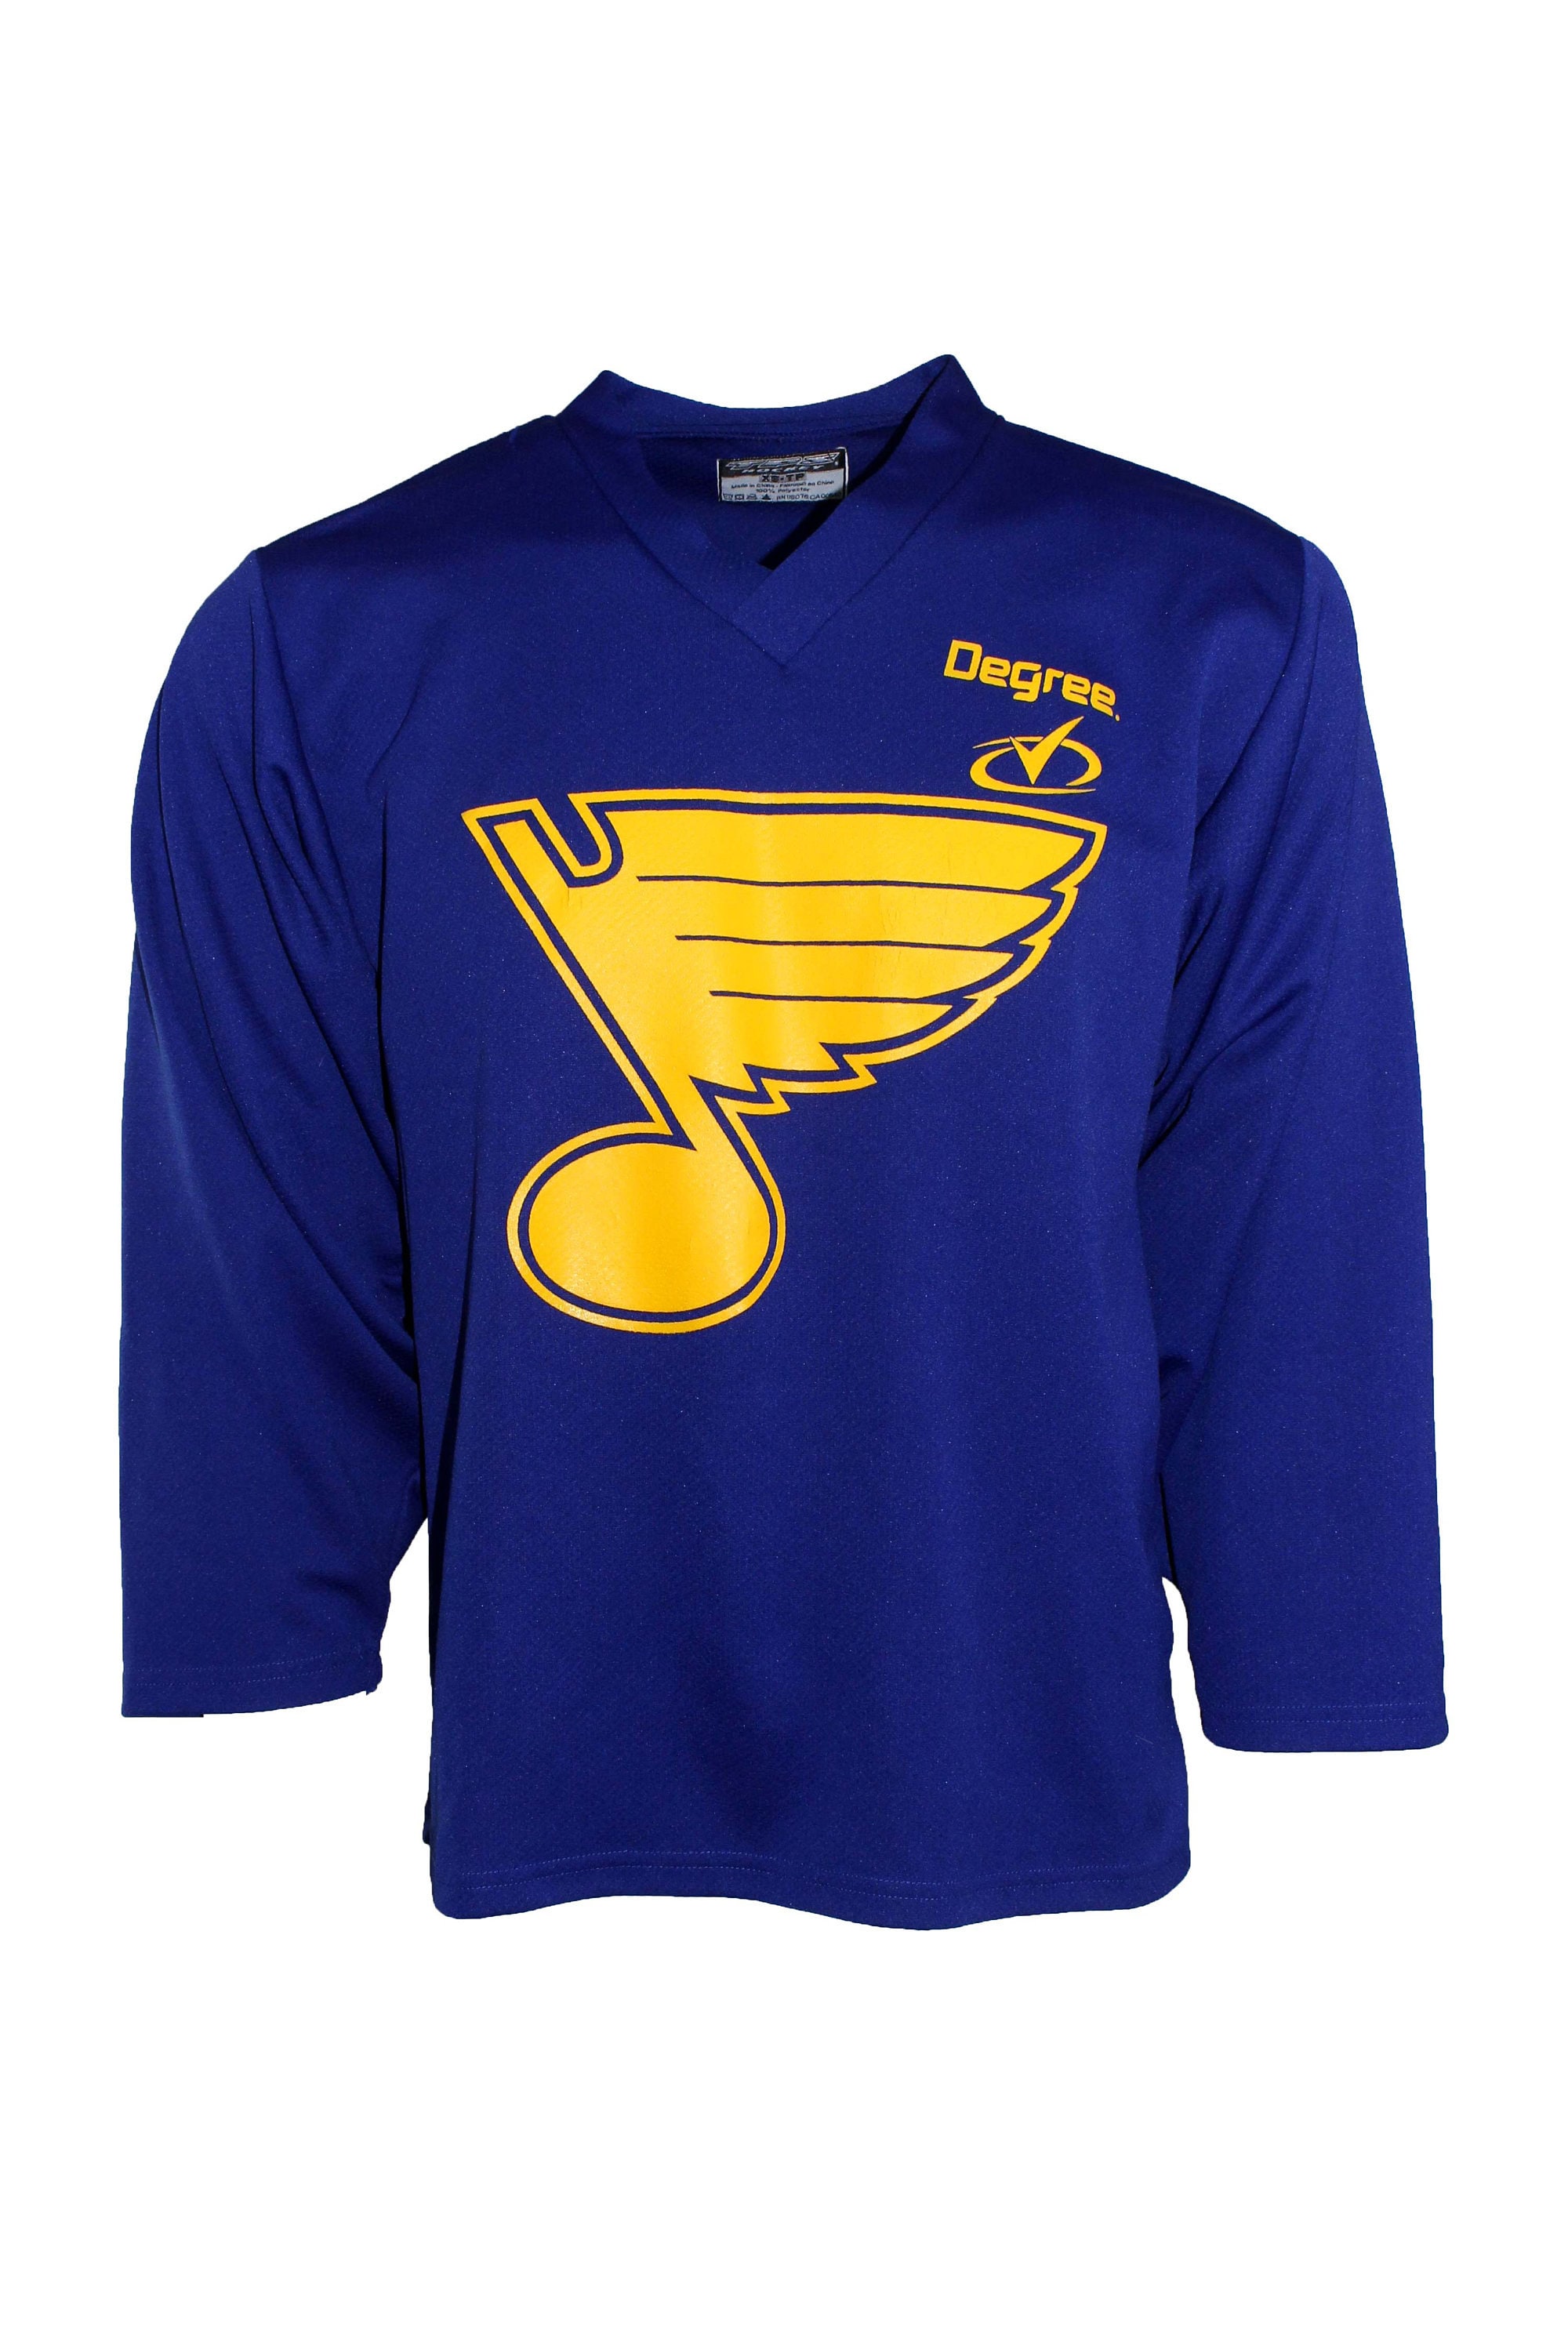 Vintage St Louis Blues Hockey NHL Sweatshirt Medium 